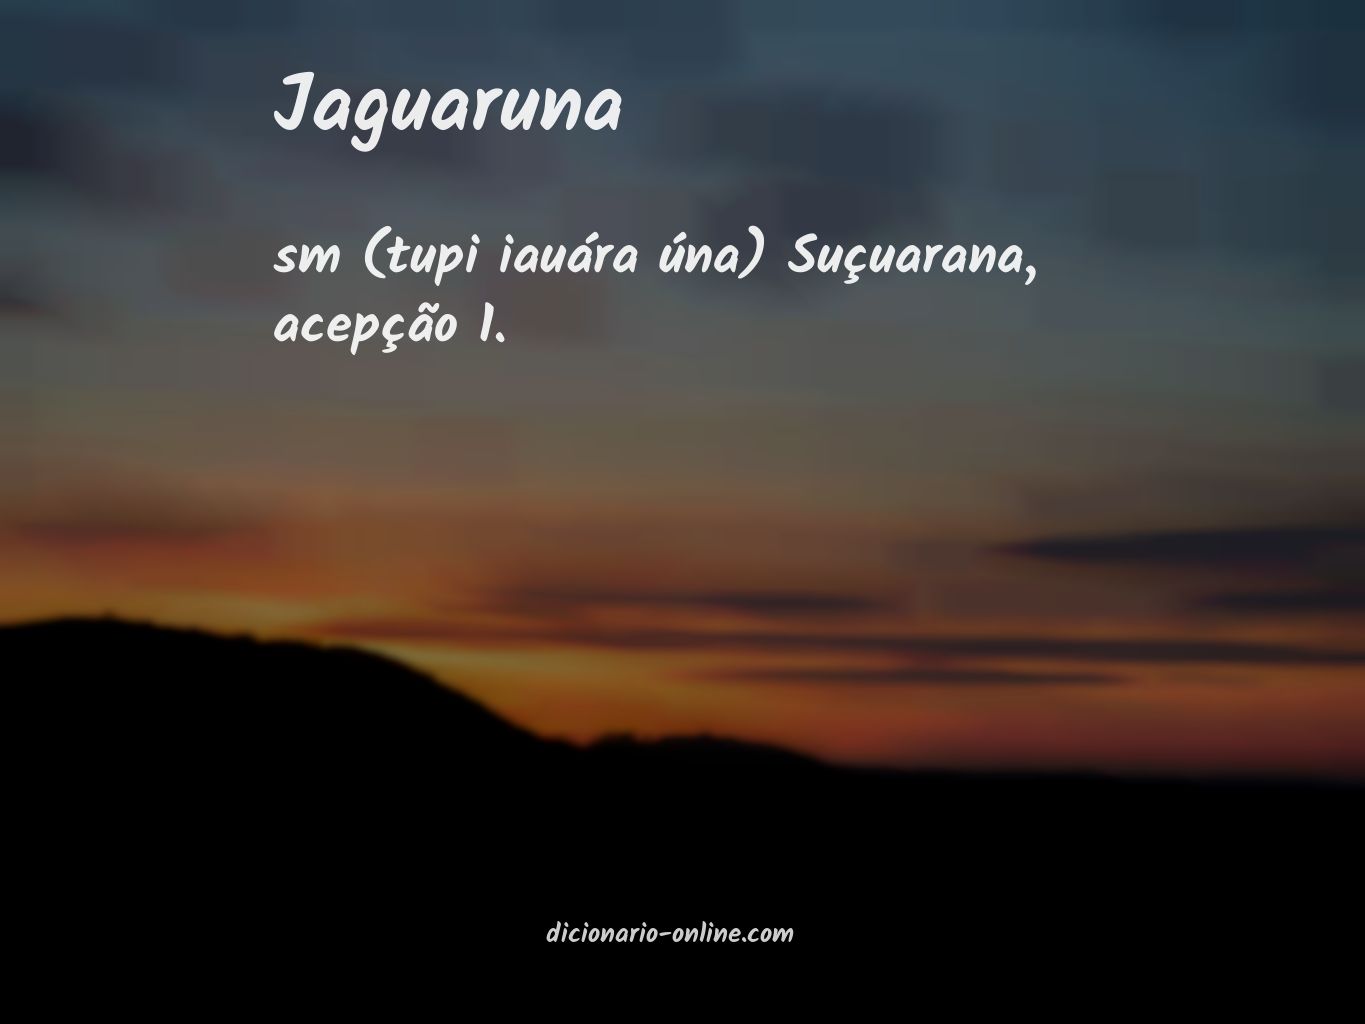 Significado de jaguaruna